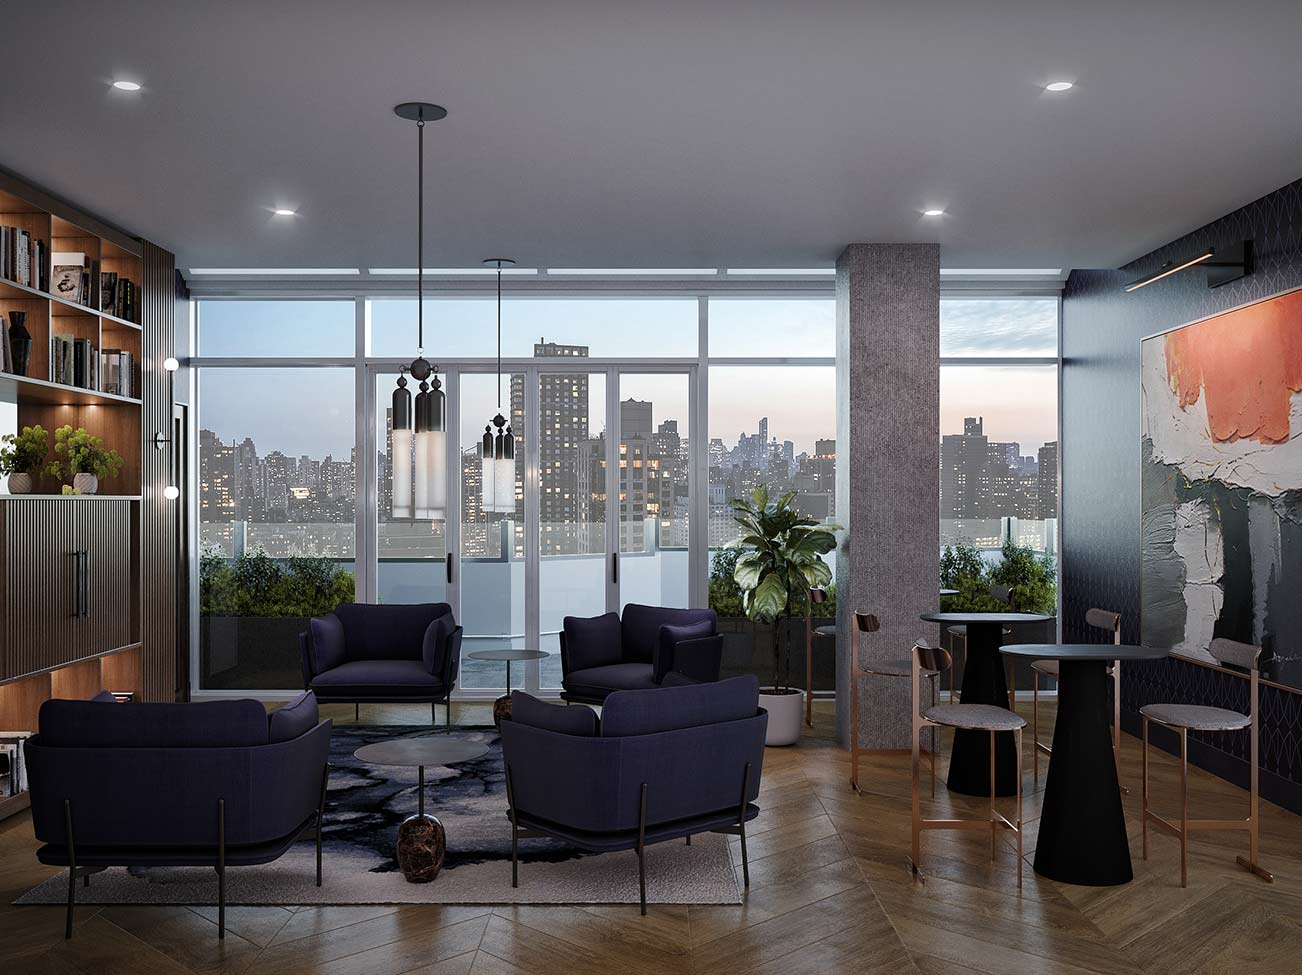 Panorama urbain d’un appartement contemporain aux fenêtres pleine longueur avec meubles modernes et mur d’accent bleu foncé.